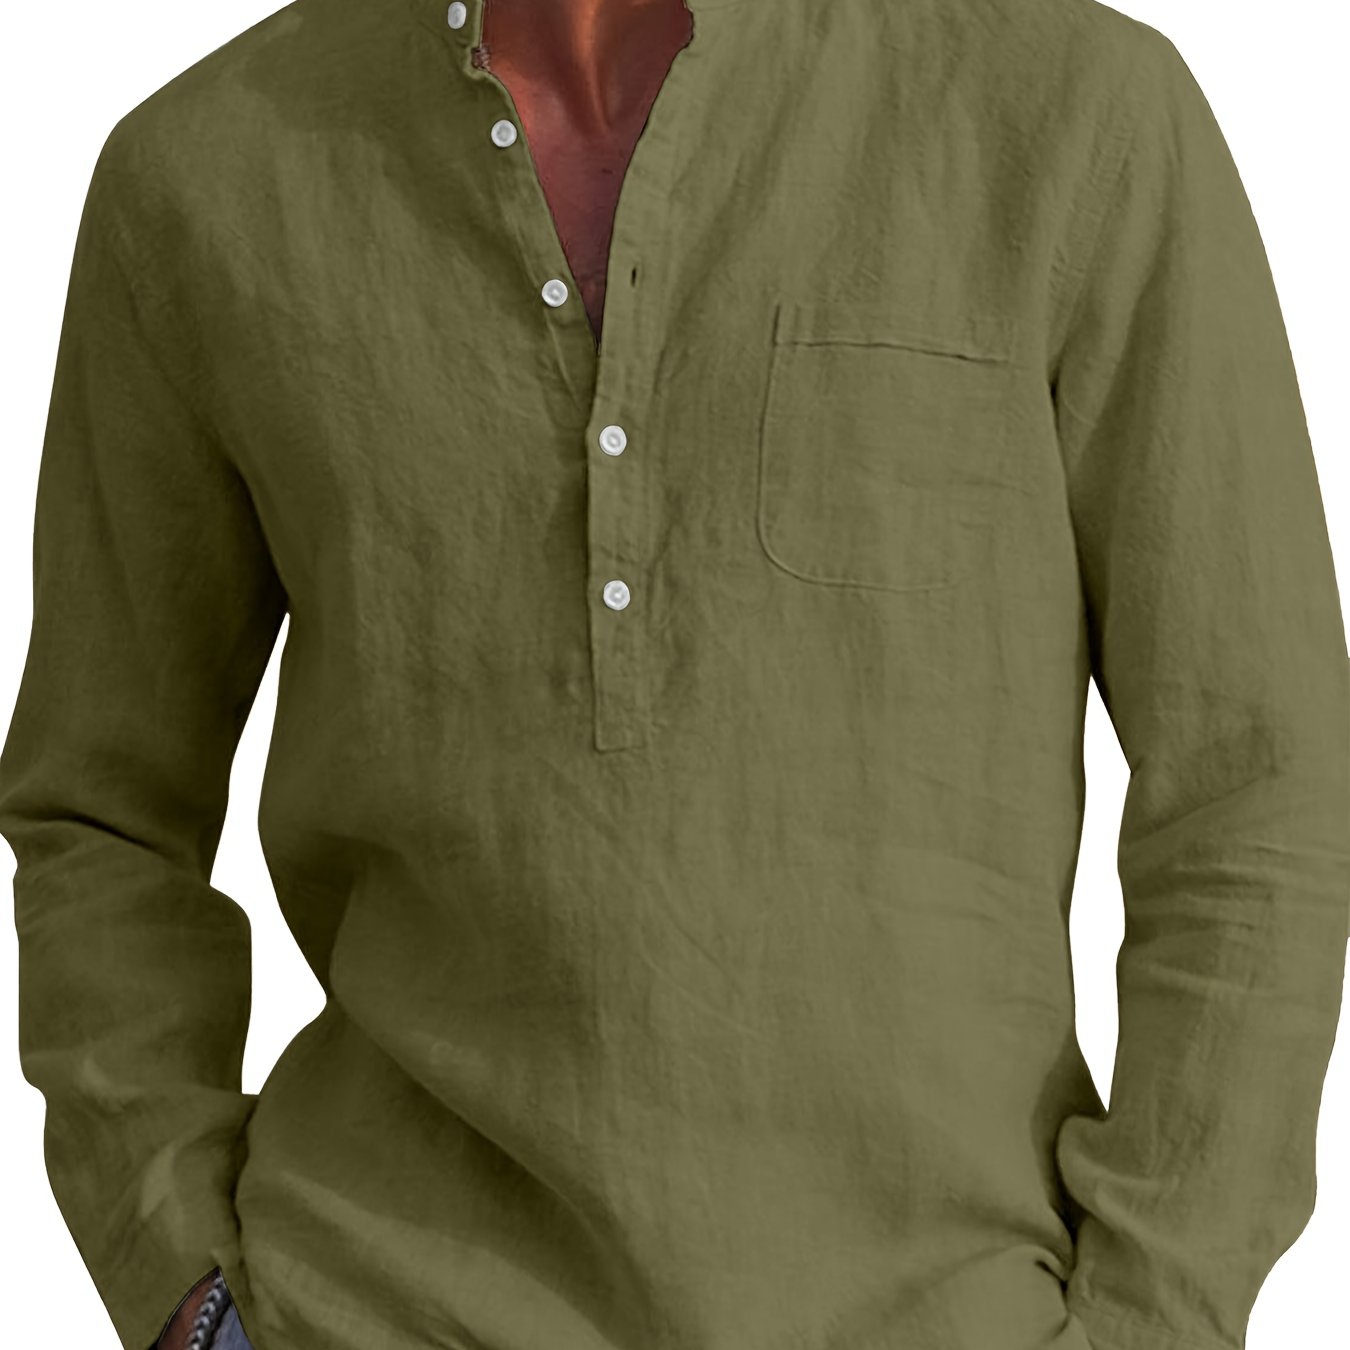 Men's Casual Henley Shirts * Collar Shirt Long Sleeve Button Up Plain Tops